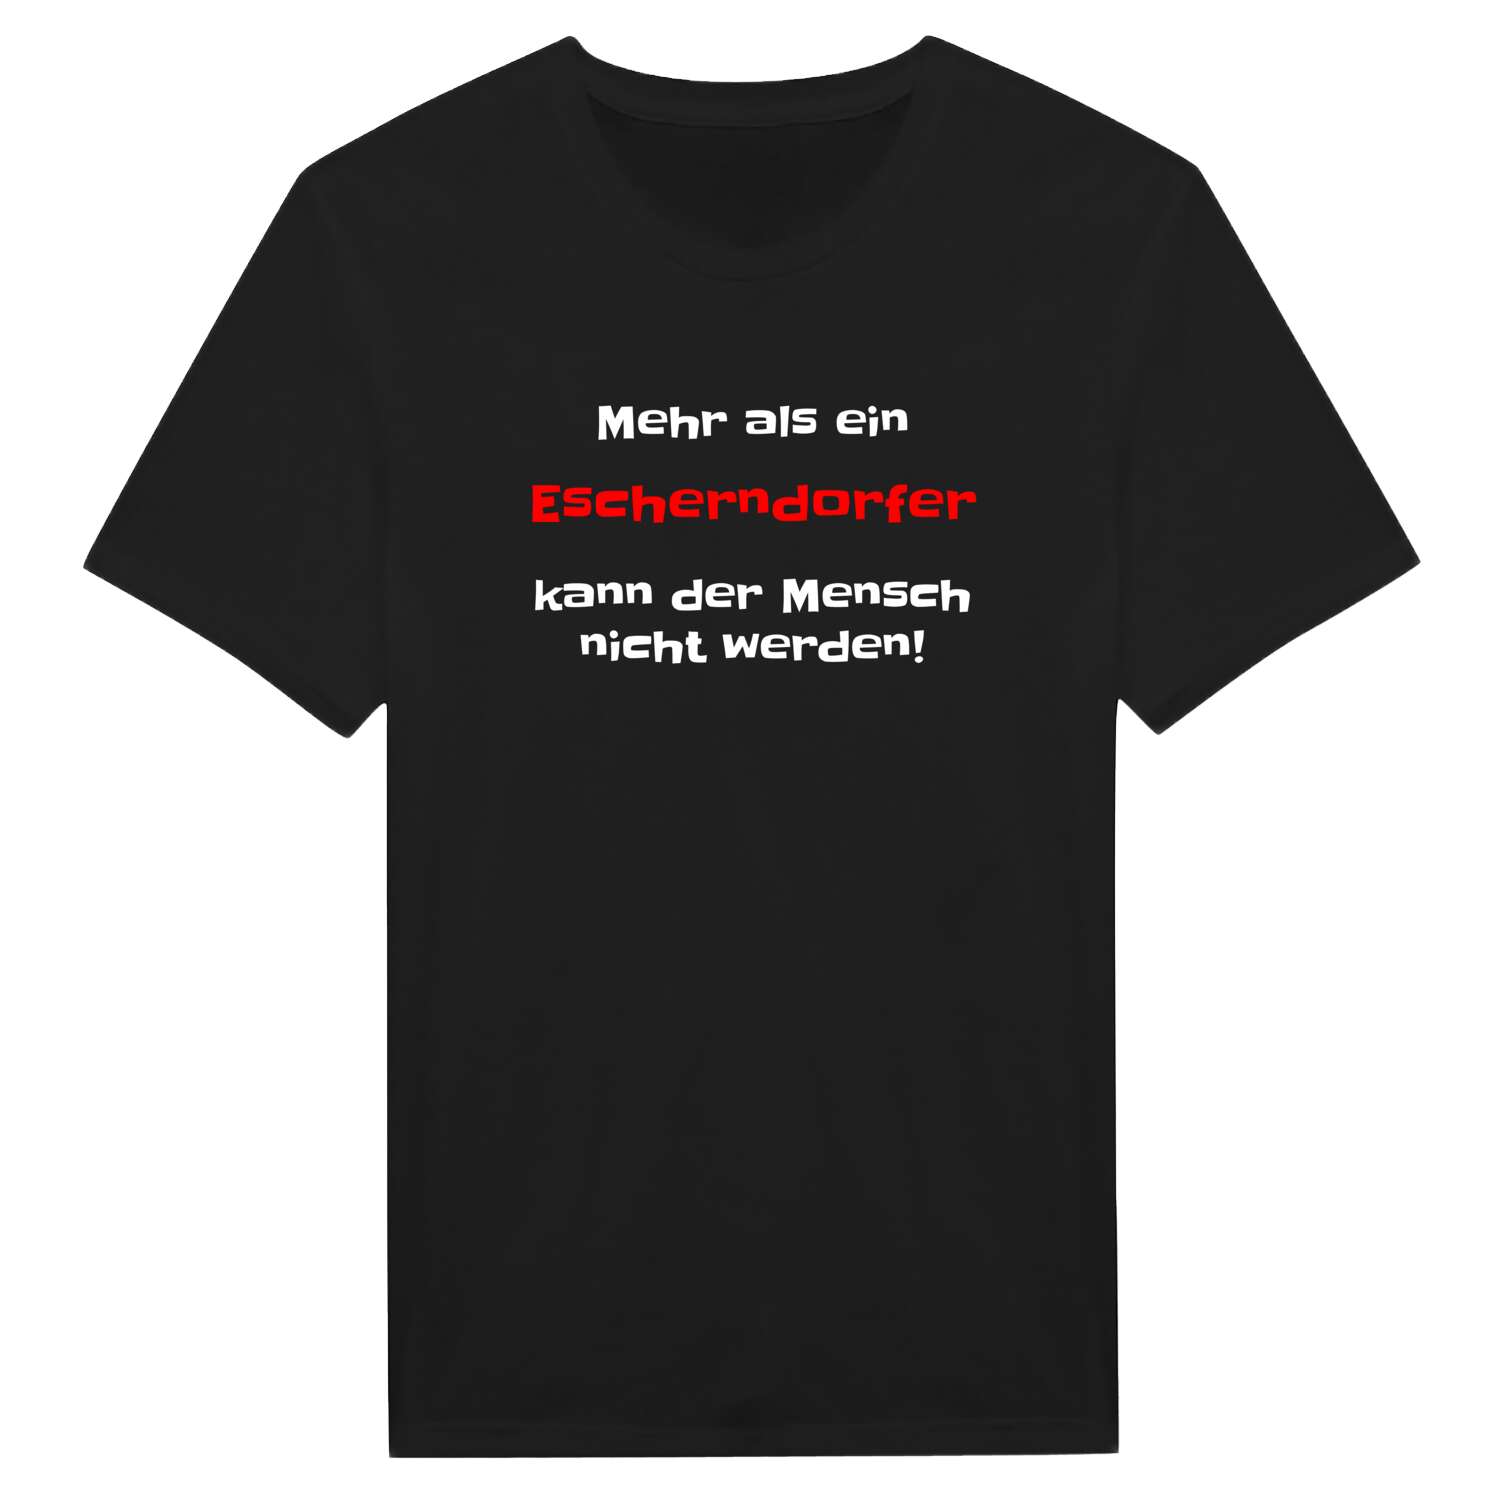 Escherndorf T-Shirt »Mehr als ein«